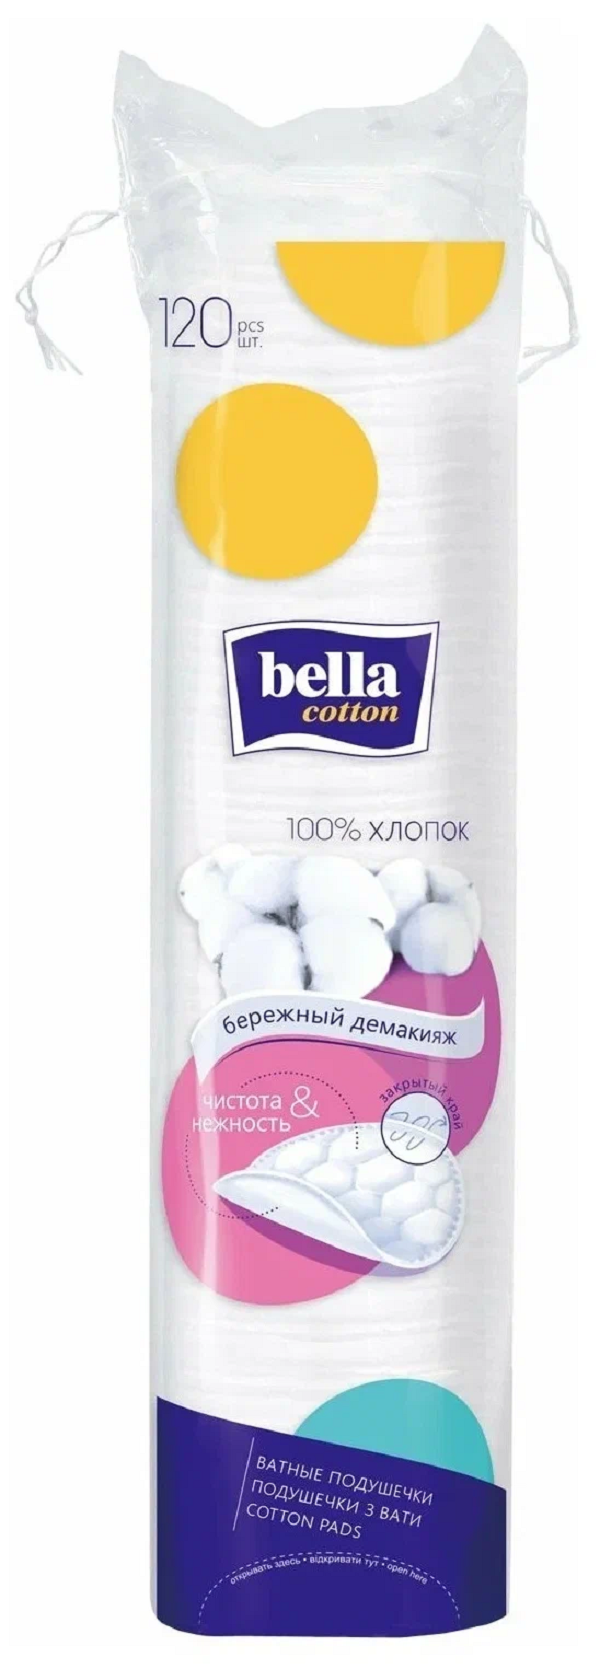 Диски ватные Bella Cotton хлопок, 120 шт.